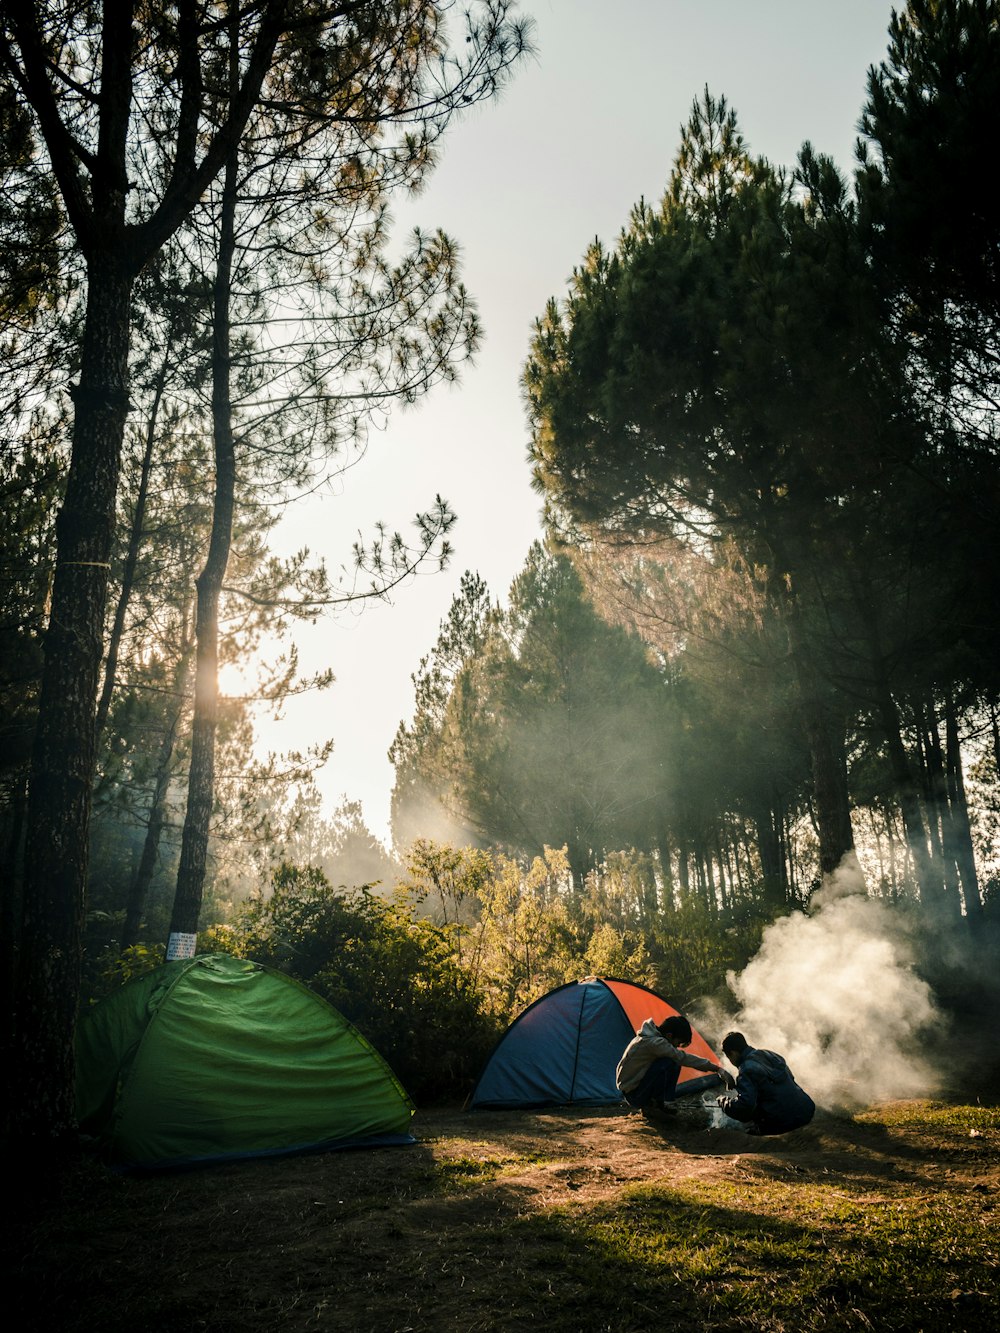 숲 속의 캠핑 텐트 두 개 근처에 앉아 있는 두 사람